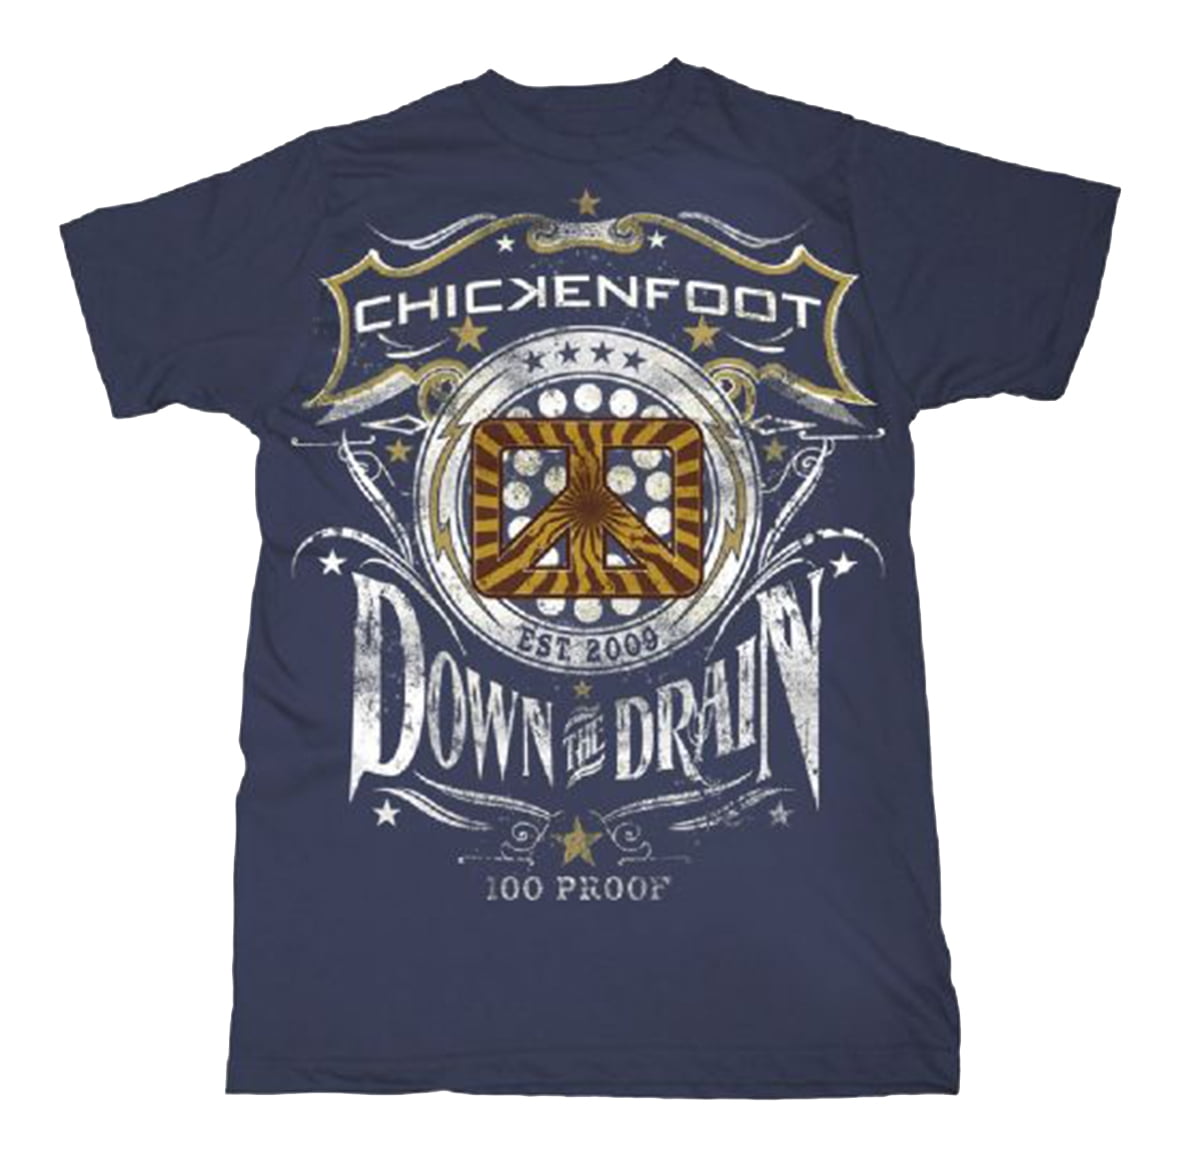 Chickenfoot fan club tshirt